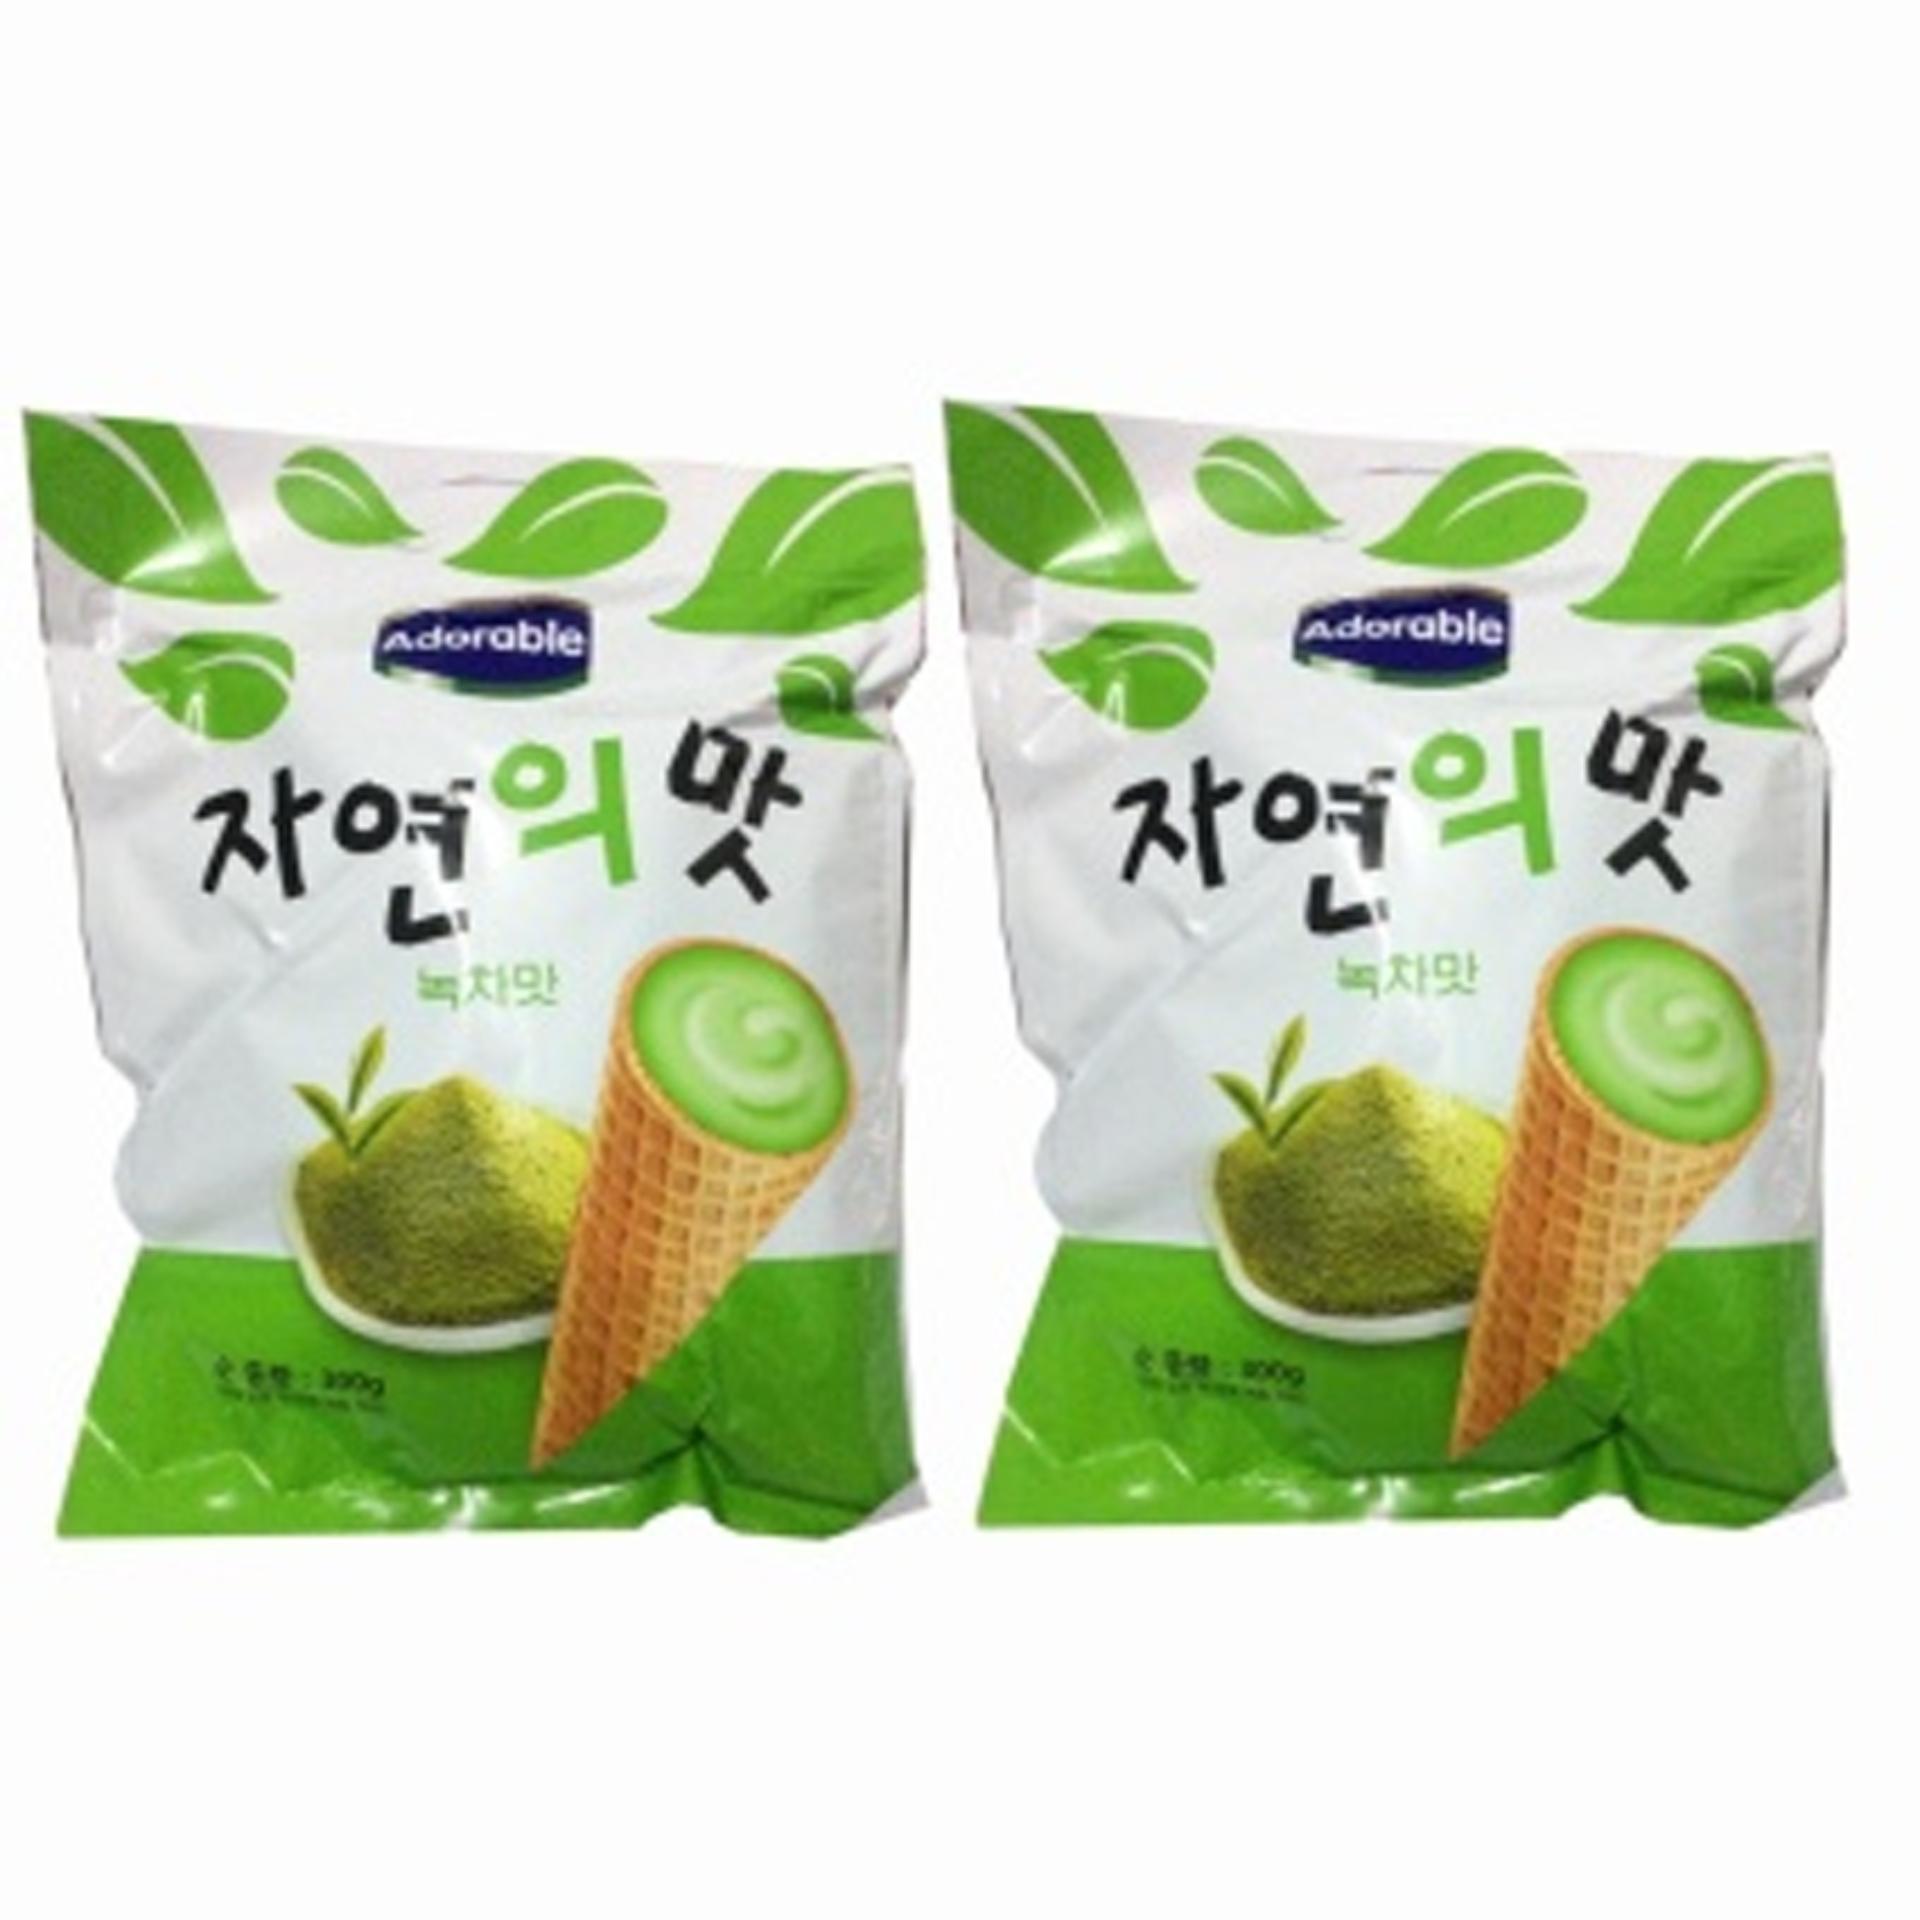 Bộ 2 Gói Bánh ốc quế Adorable (Kem Trà Xanh) 300g/gói Hàn Quốc